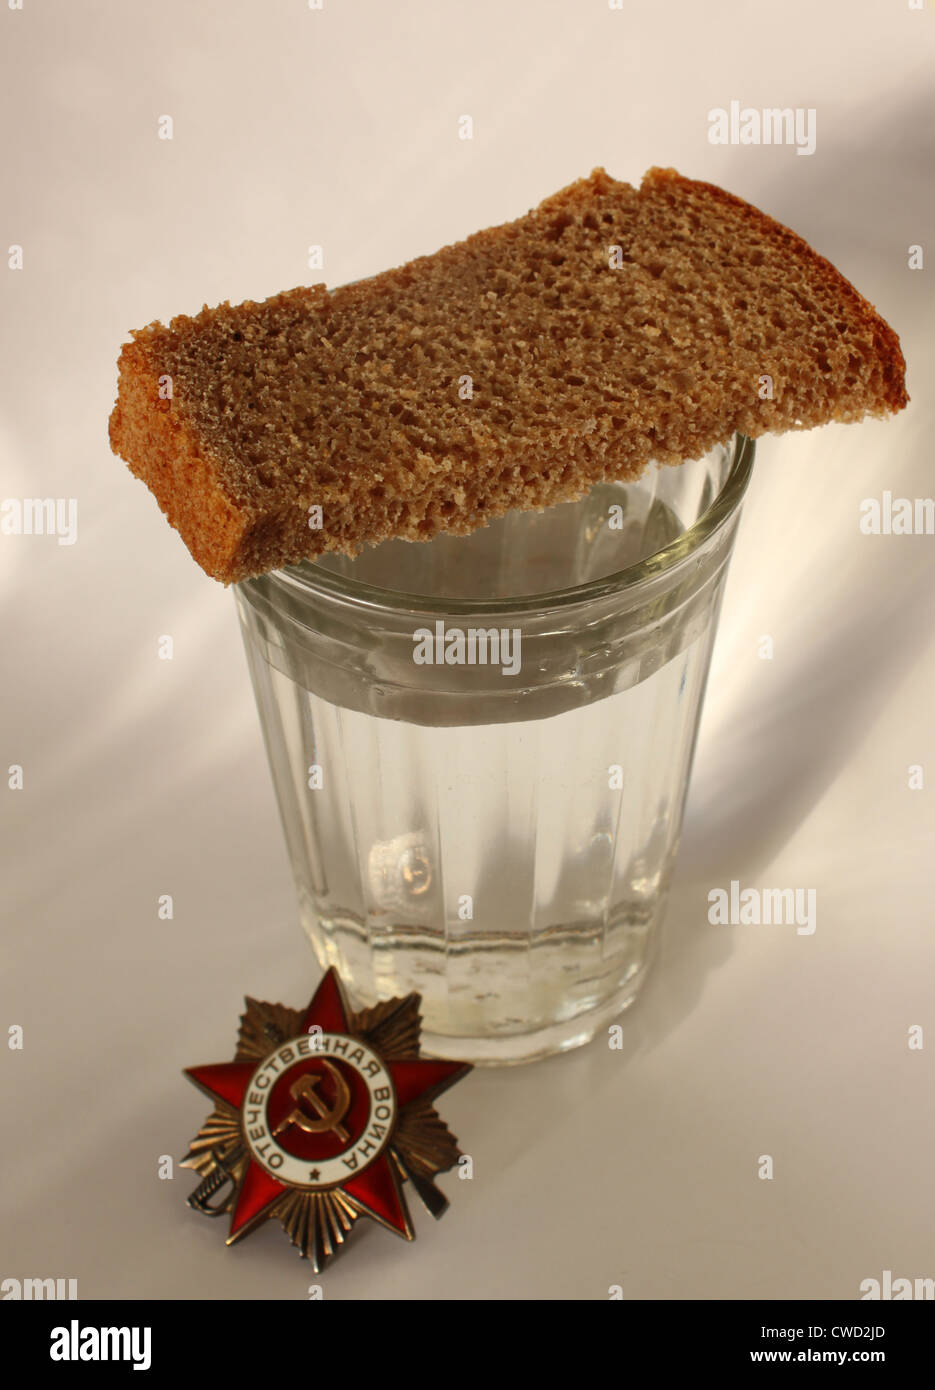 L'ordre 'Grande guerre patriotique' et verre avec morceau de pain Banque D'Images